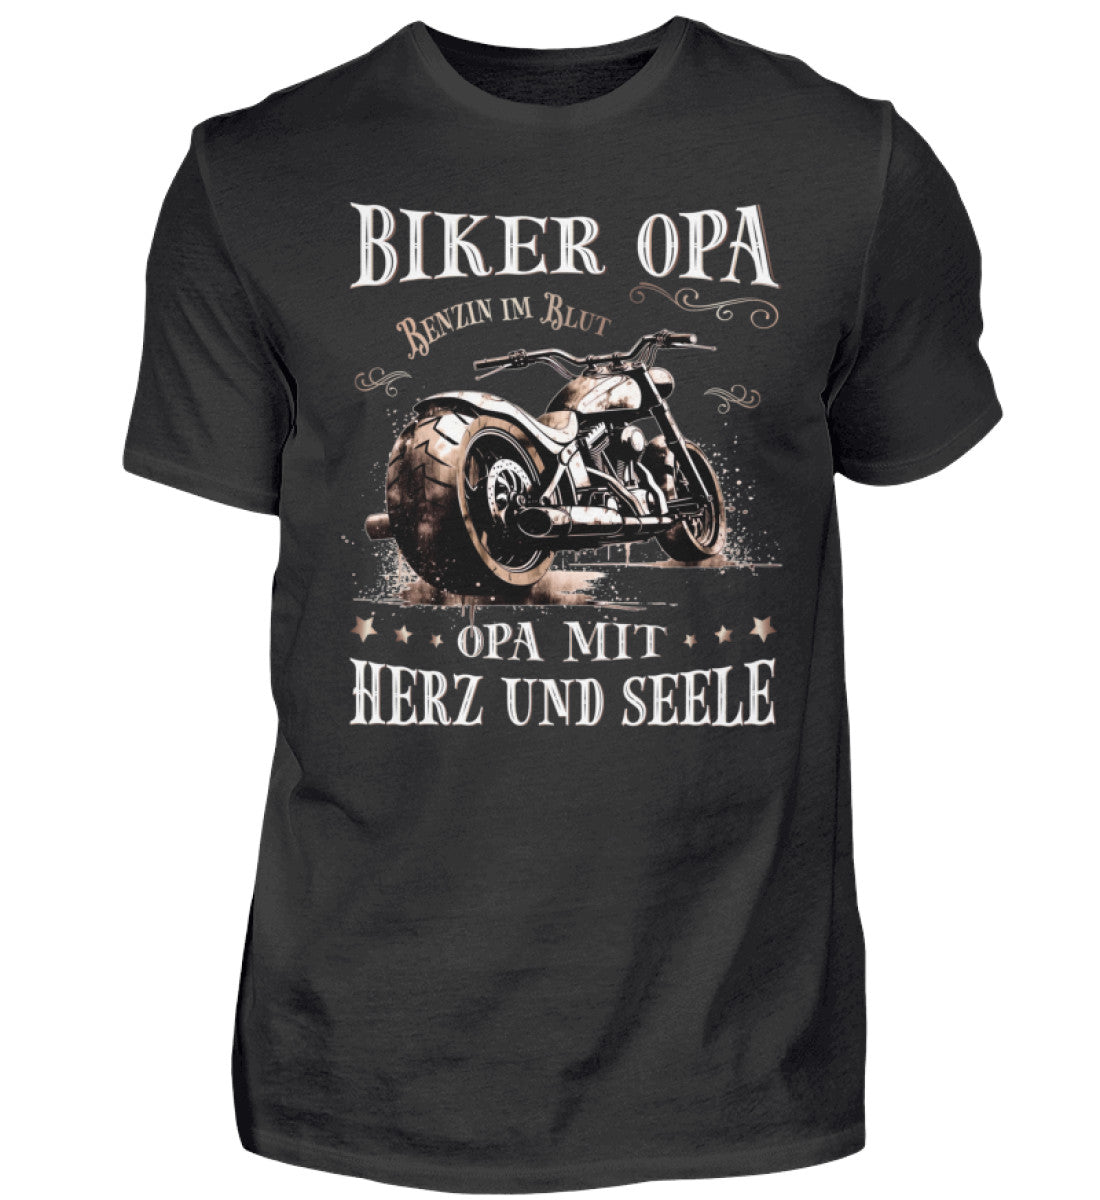 Ein Biker T-Shirt für Motorradfahrer von Wingbikers mit dem Aufdruck, Biker Opa - Benzin im Blut - Opa mit Herz und Seele, in schwarz.